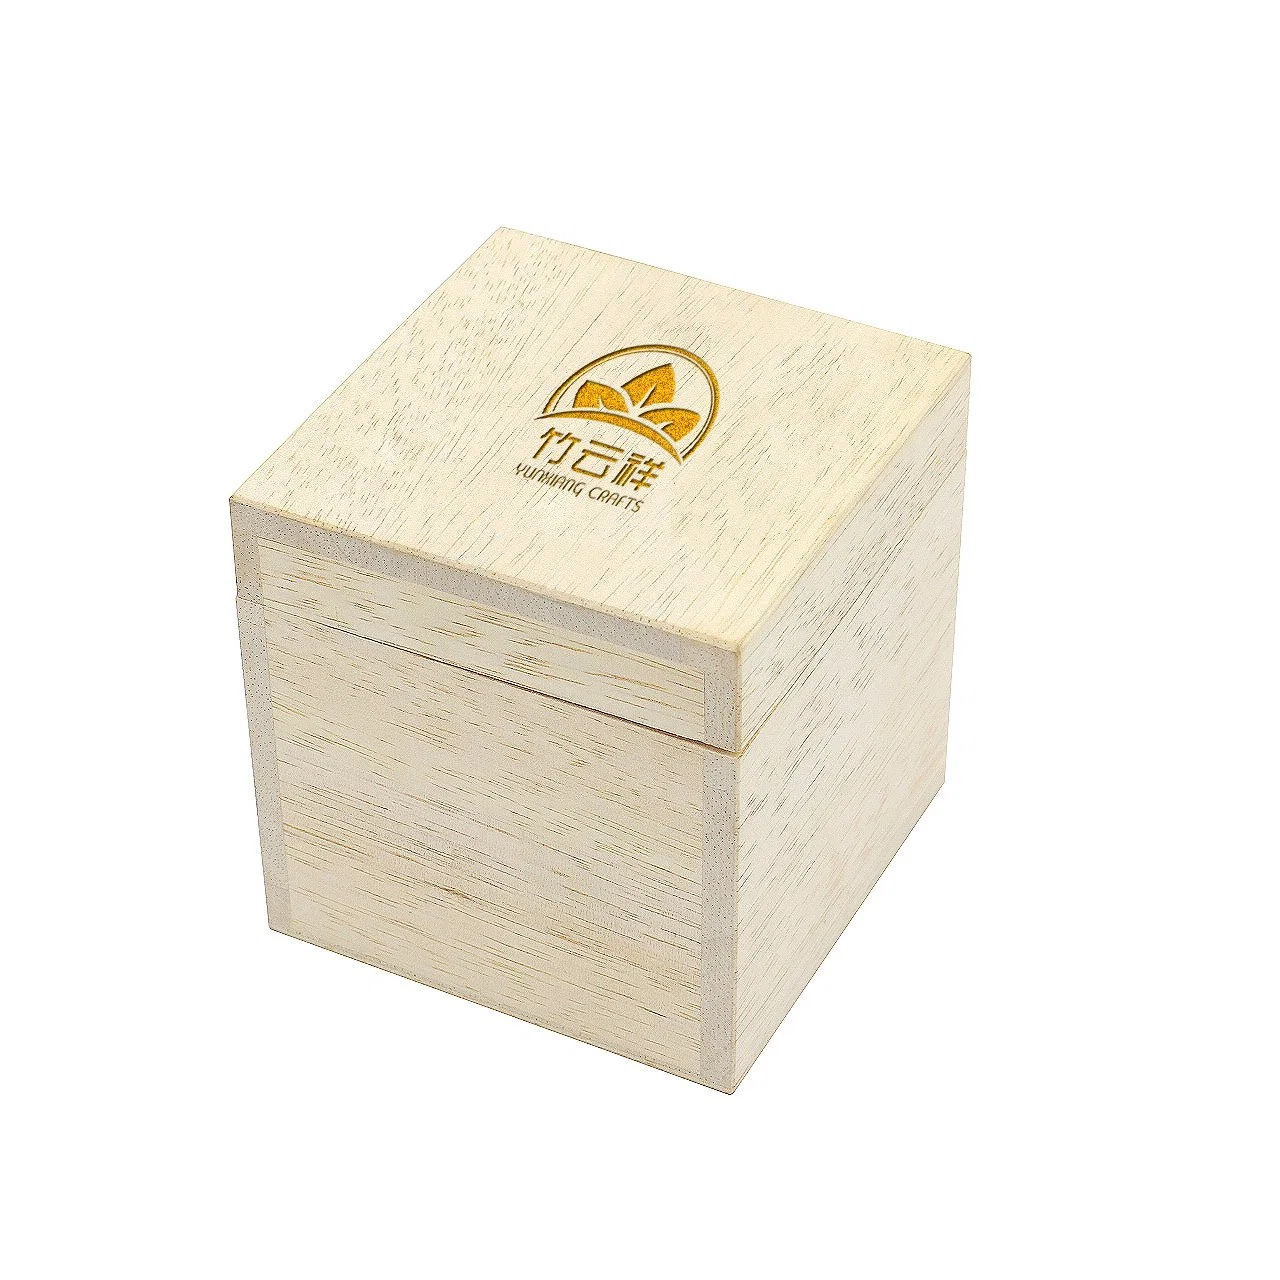 Caixa de armazenamento versátil e personalizável com decoração em madeira